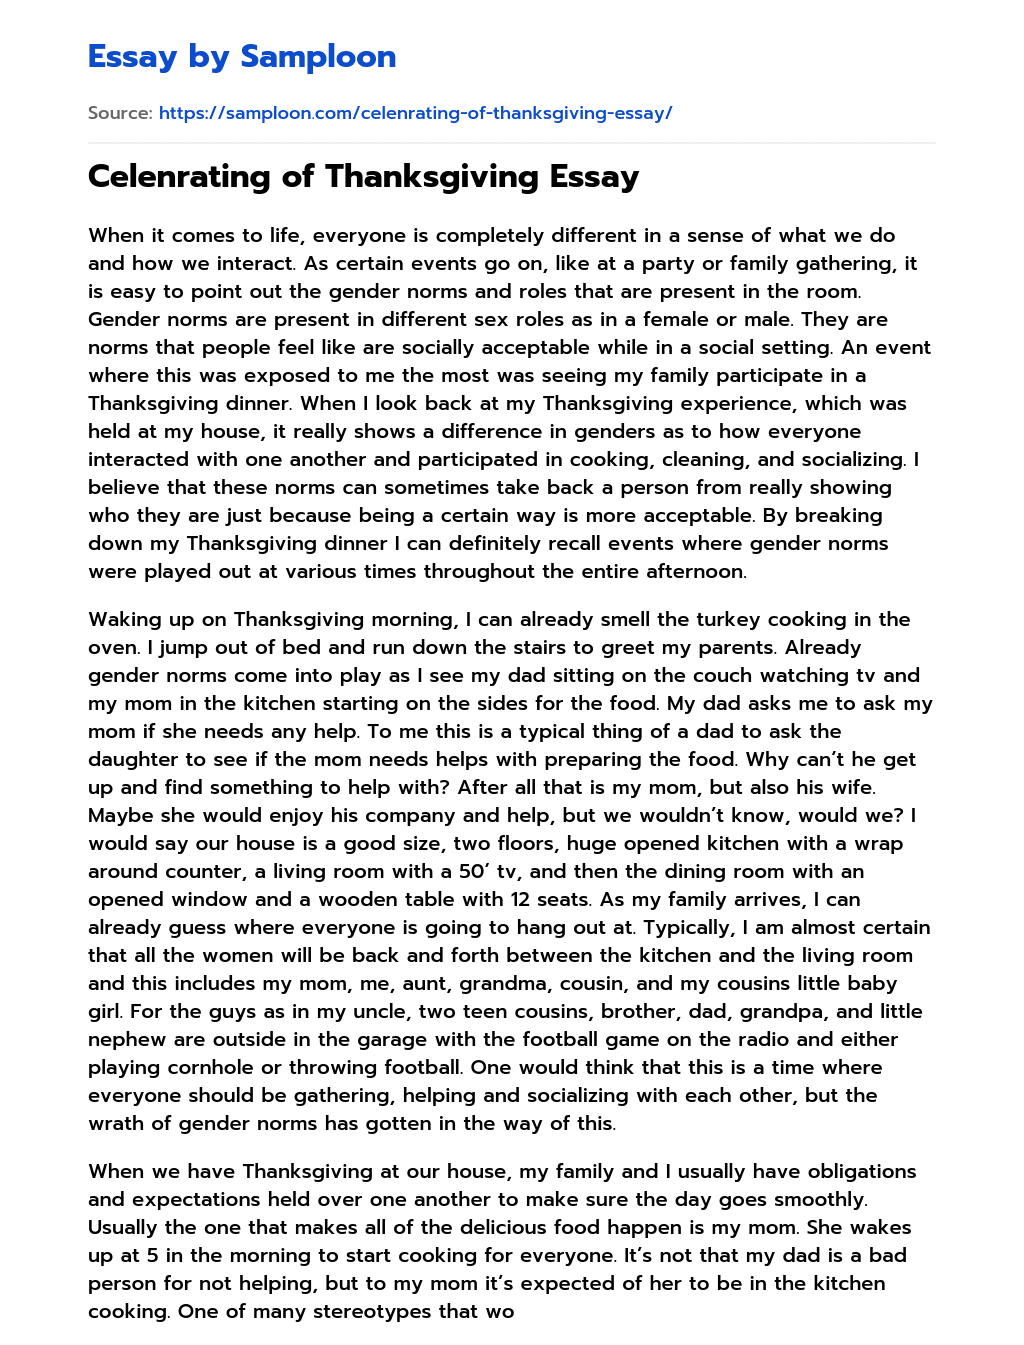 Celenrating of Thanksgiving Essay essay